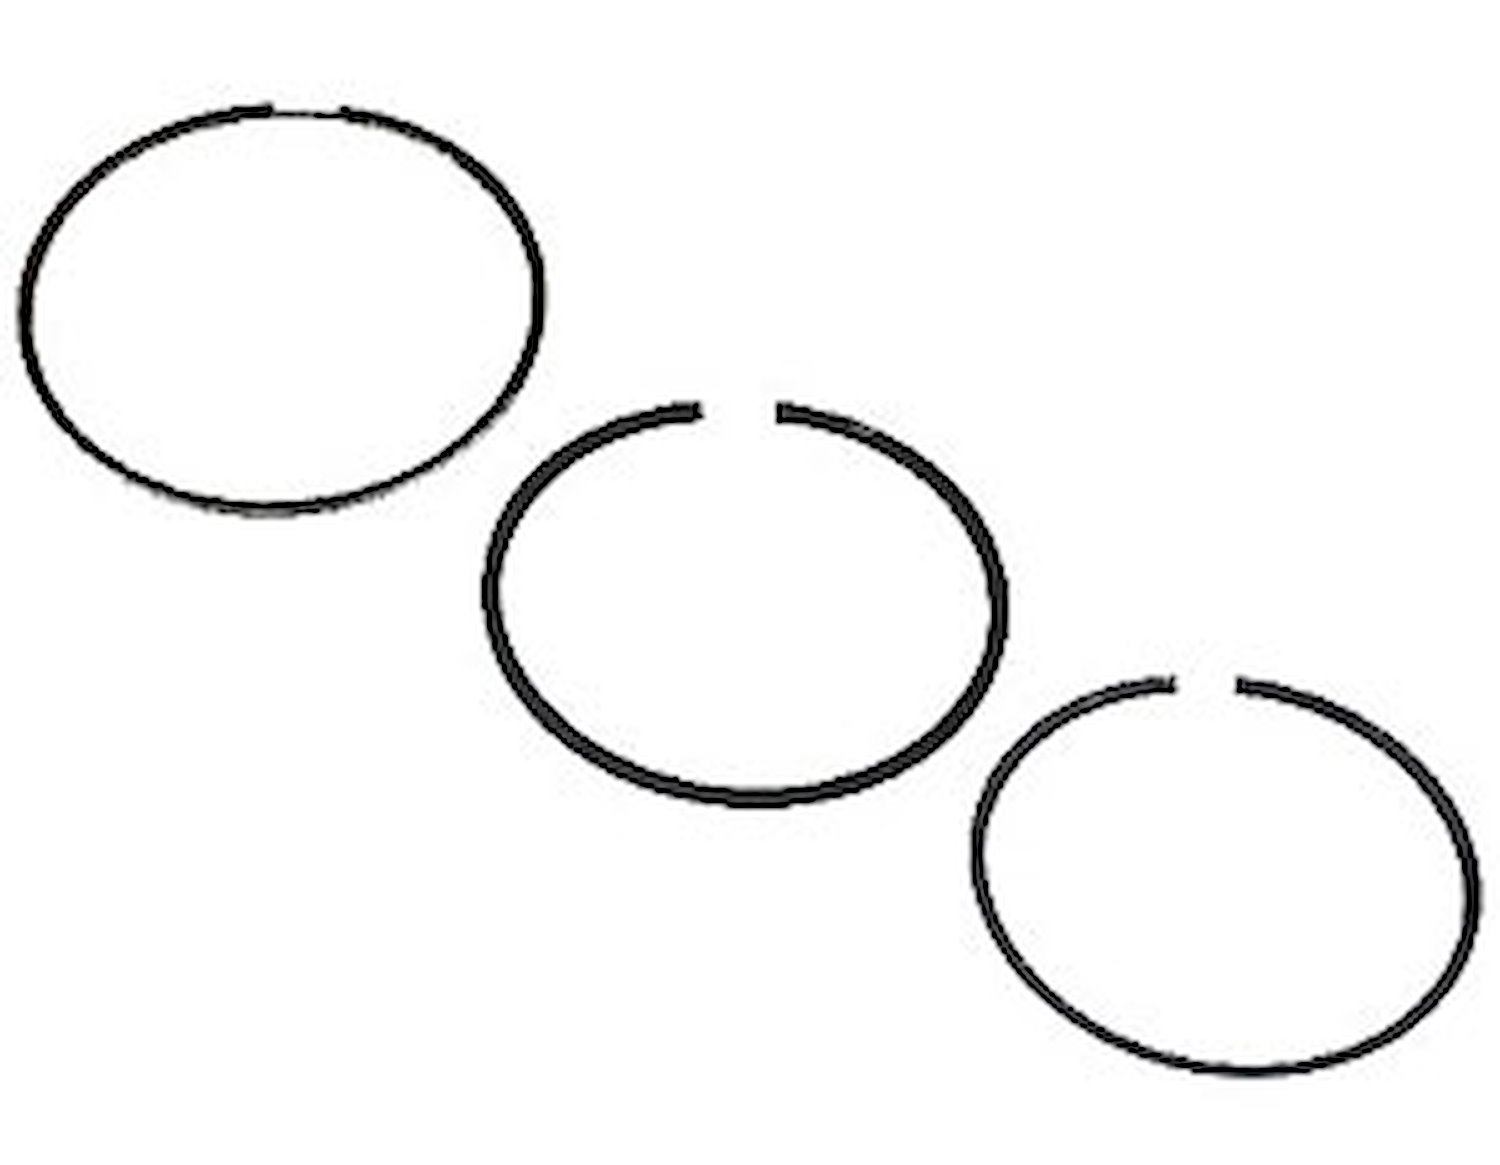 Standard Tension Piston Ring Set Top Ring: 1.2mm